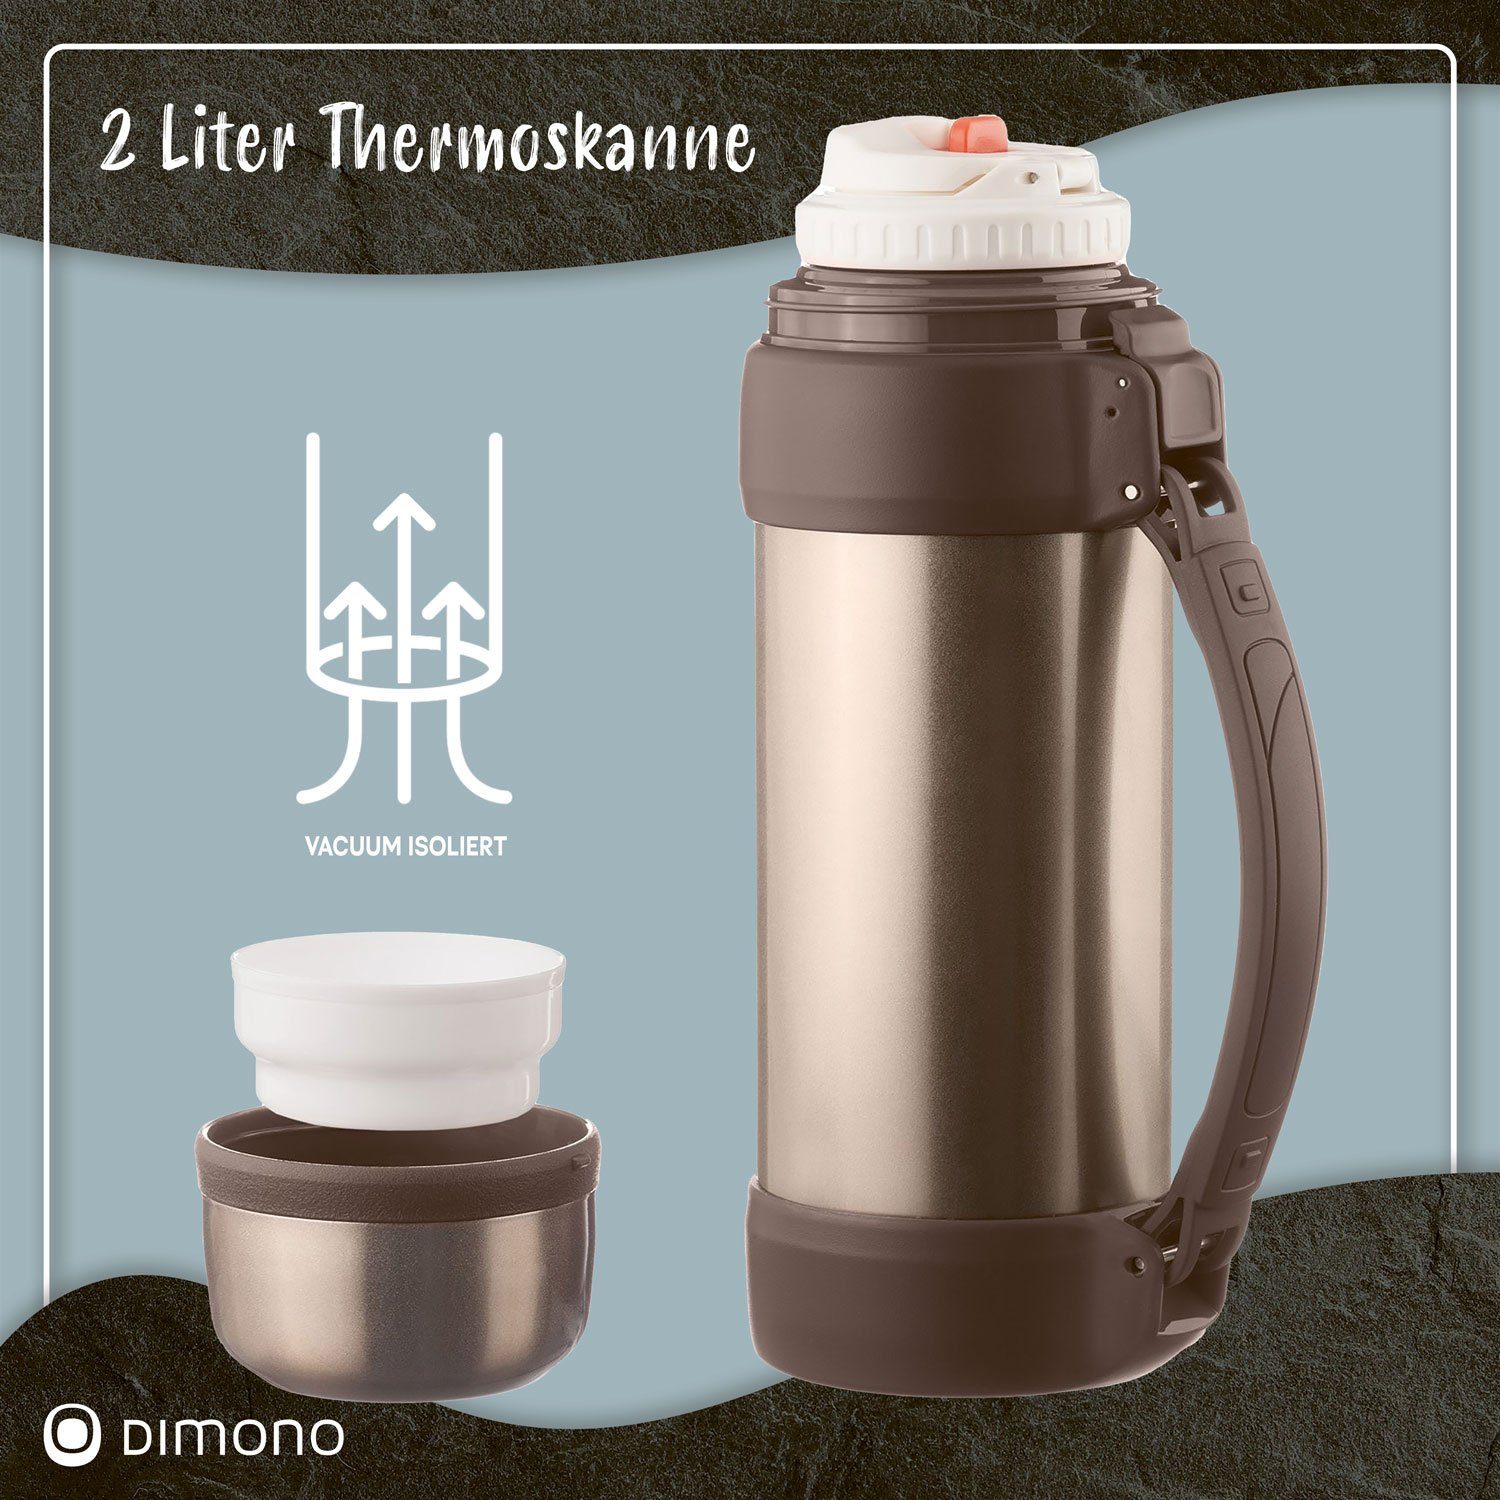 Dimono Thermoflasche Vakuum Thermoskanne Isolierflasche Isolierkanne Bronze-Metallic XXL, 2 Liter